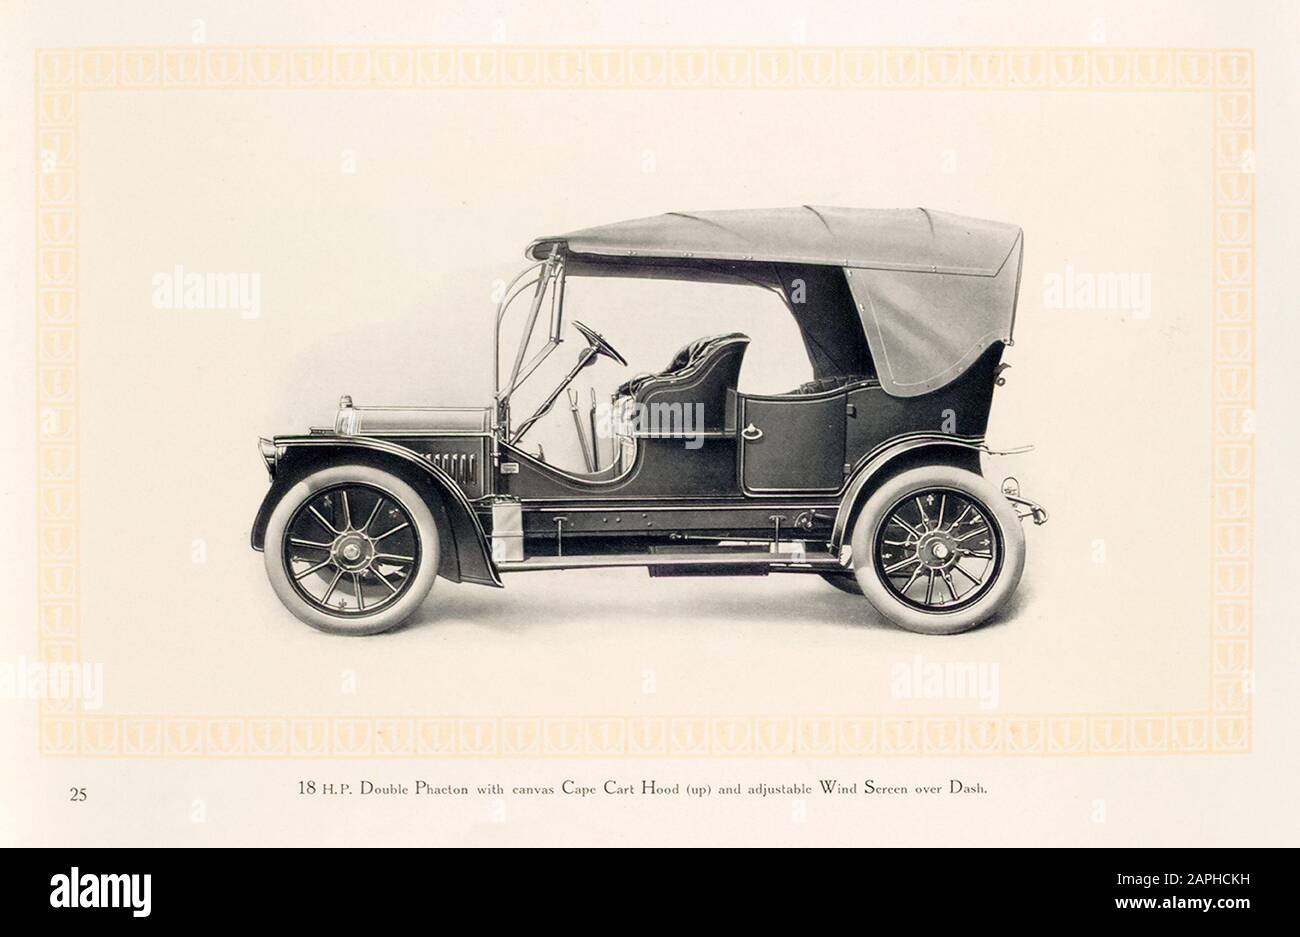 Auto d'epoca, auto a motore Benz, auto, 18 hp doppio Phaeton con copertura di tela del carrello del capo (su) e schermo del vento regolabile sopra il cruscotto, dal catalogo commerciale Benz & Co, illustrazione, 1909 Foto Stock